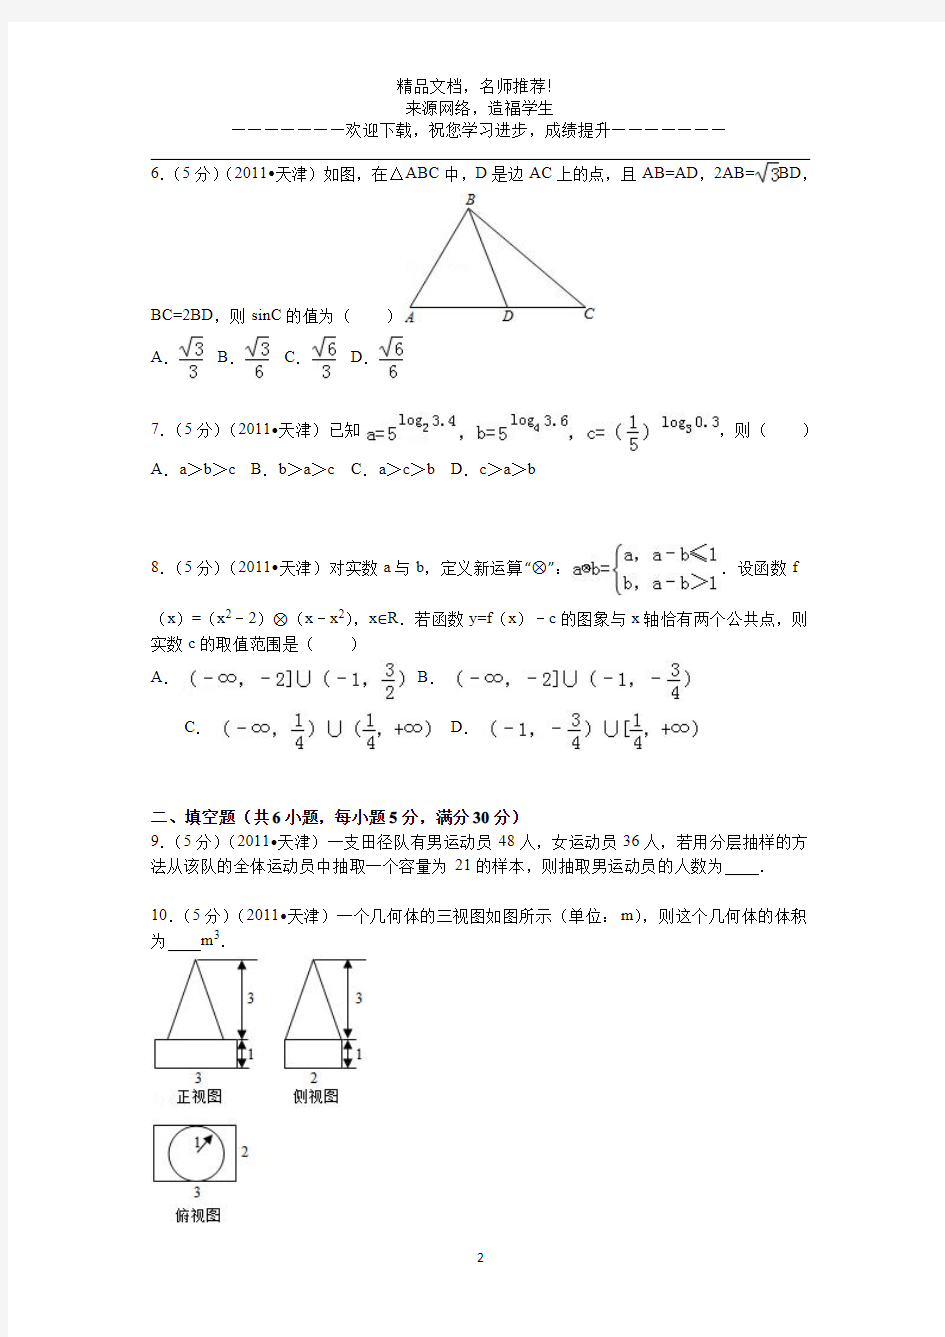 2011年高考真题——理科数学(天津卷)